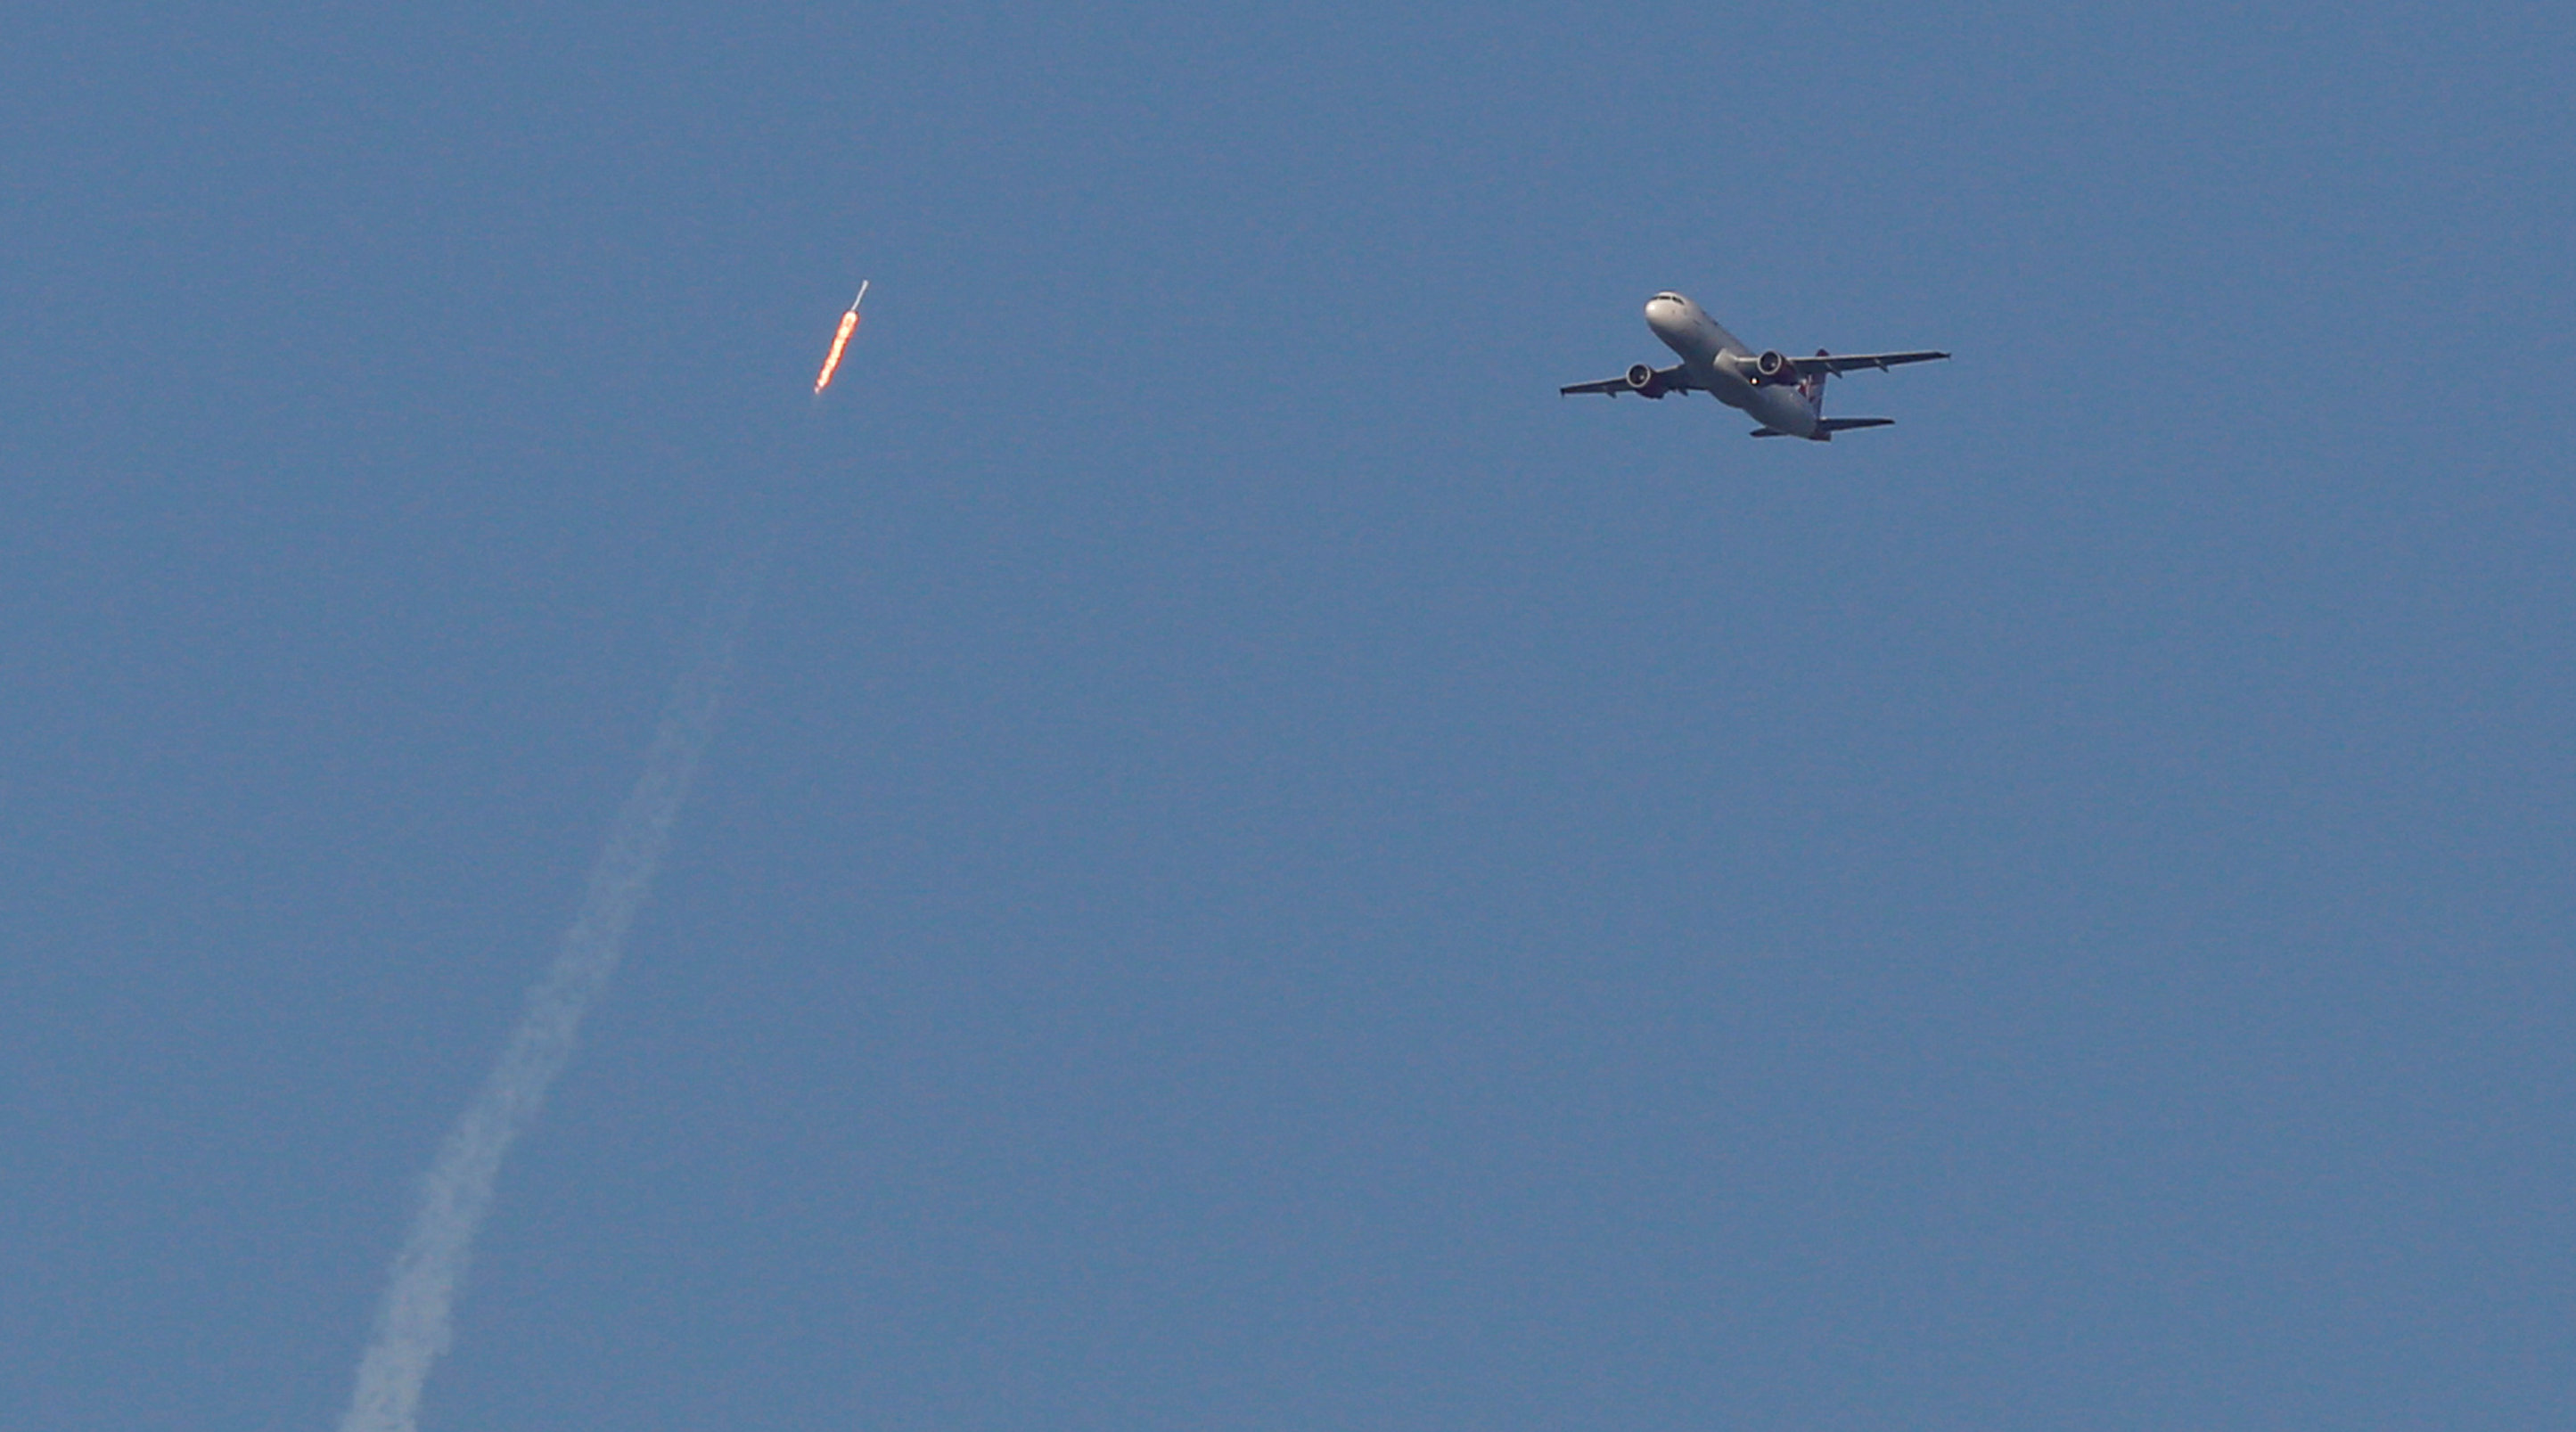 صاروخ صاروخ سبيس إكس ينطلق نحو الفضاء